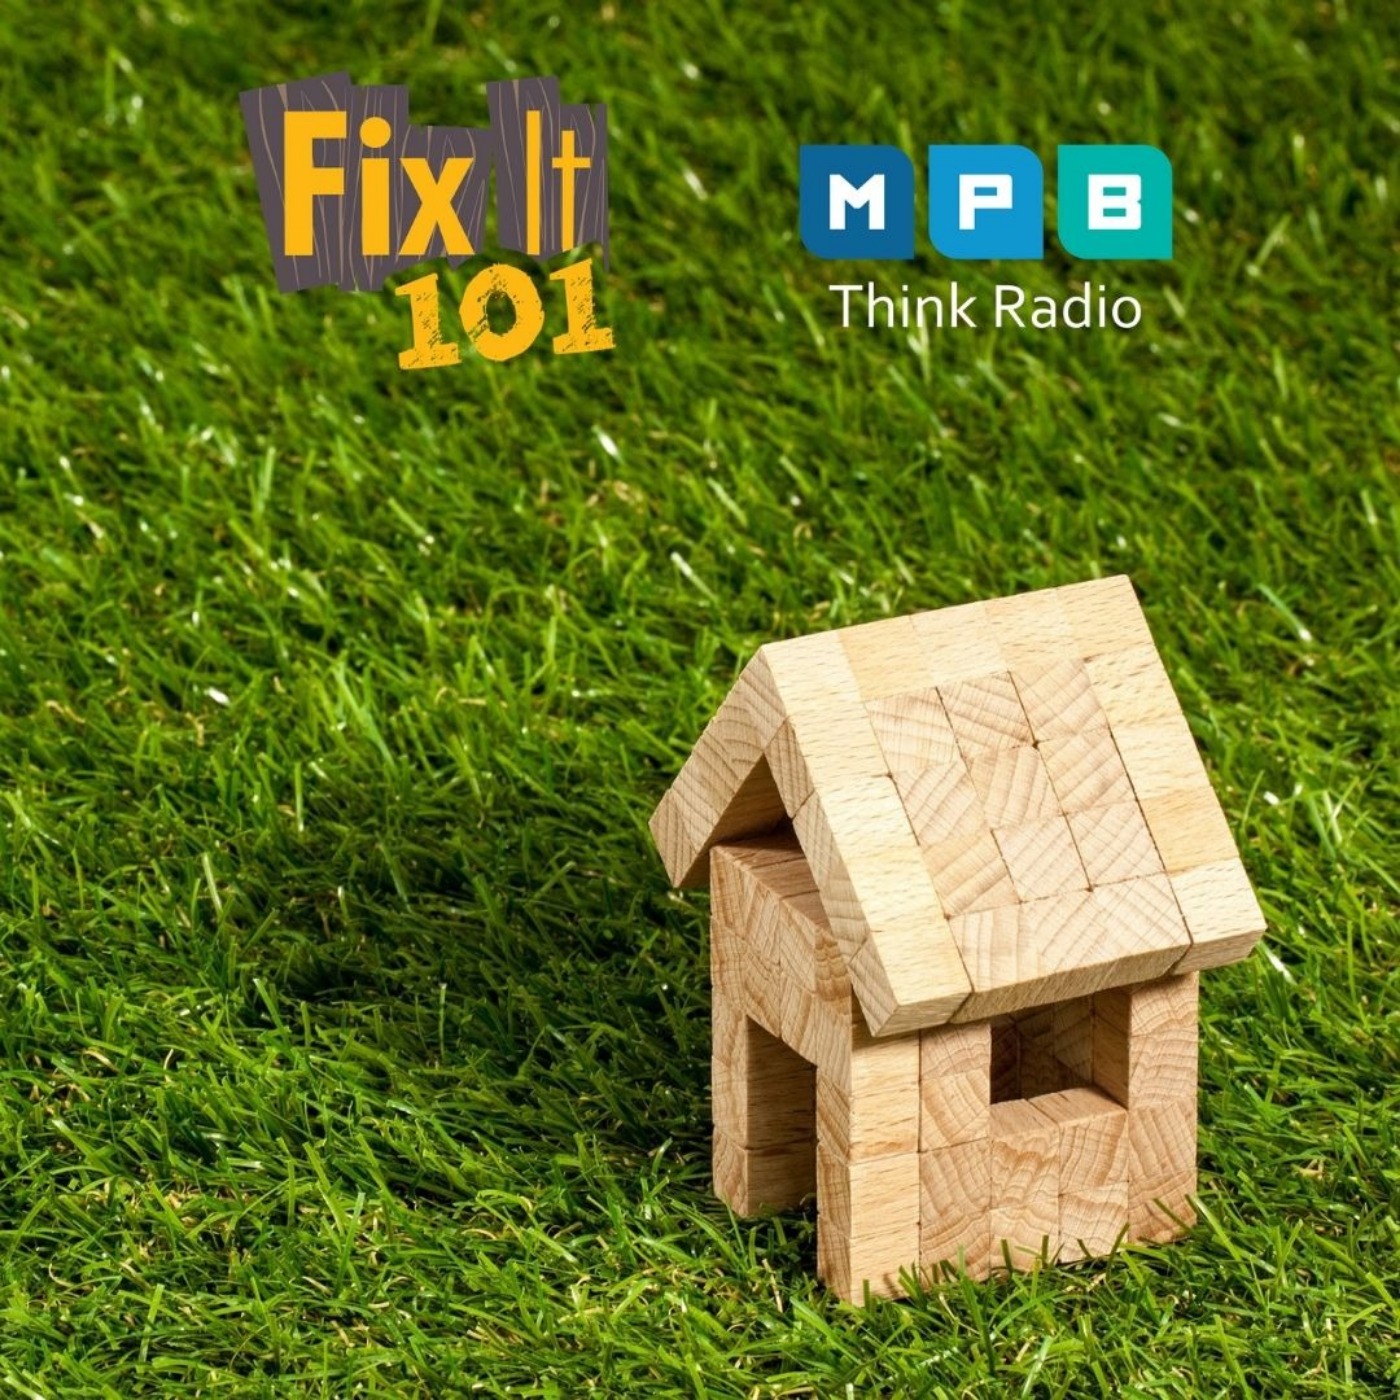 Fix It 101: Raise The Roof